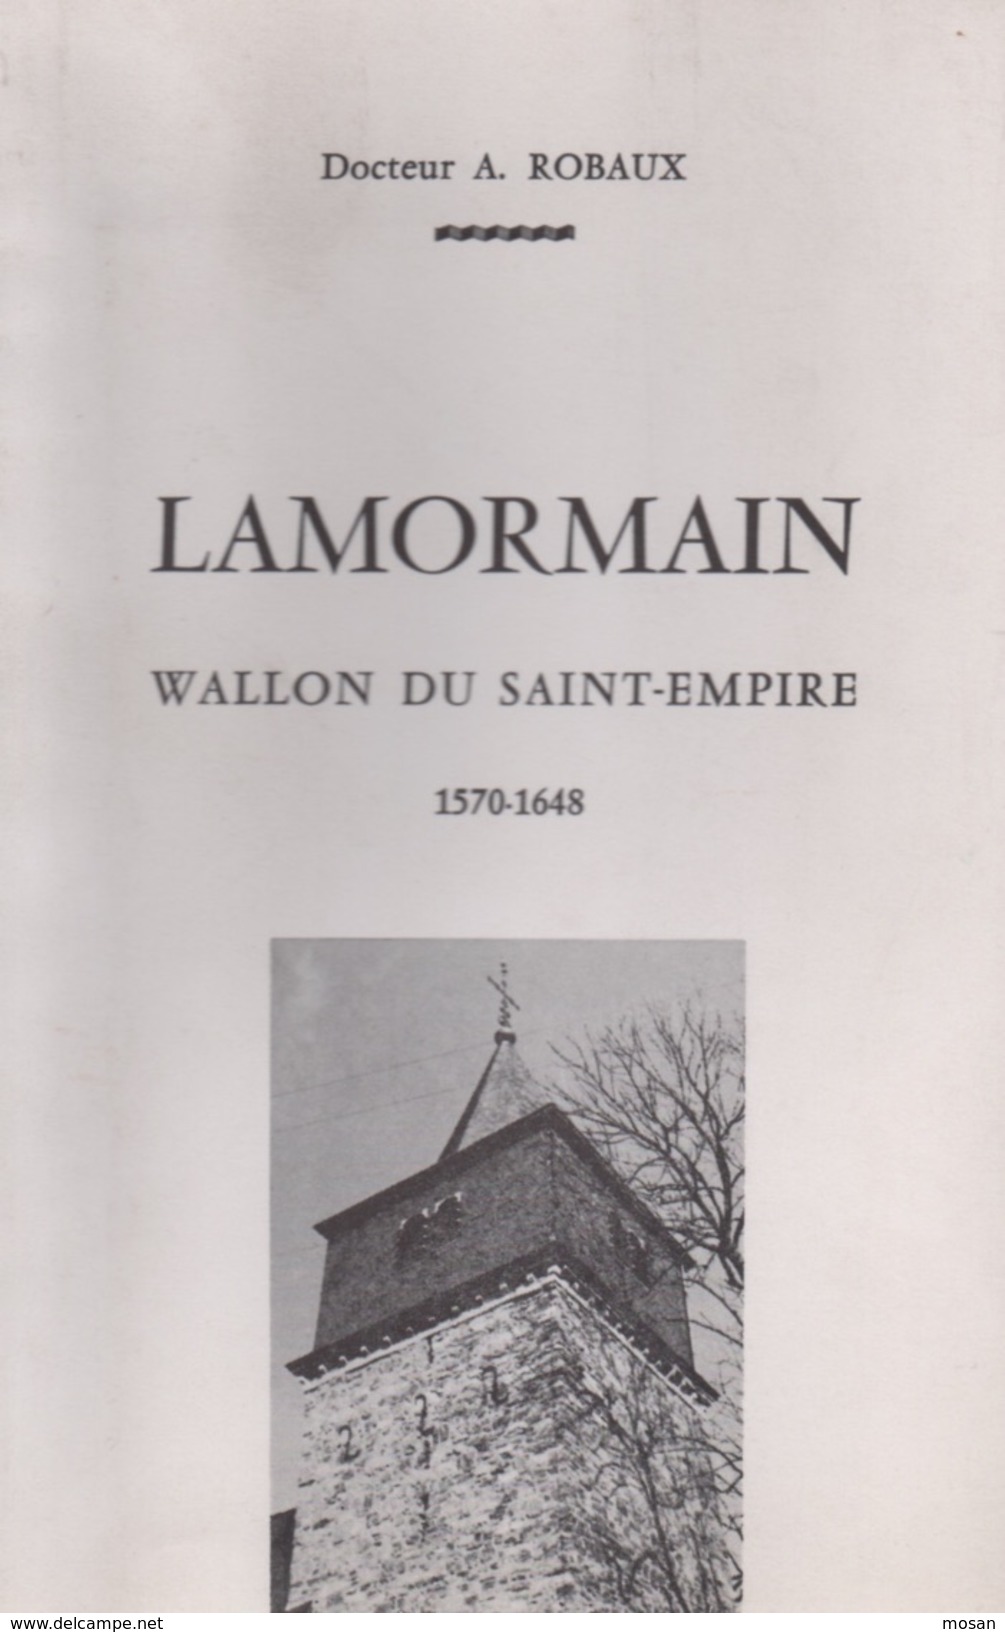 Lamormain. Wallon Du Saint-Empire. Docteur A. Robaux. Luxembourg - Belgien